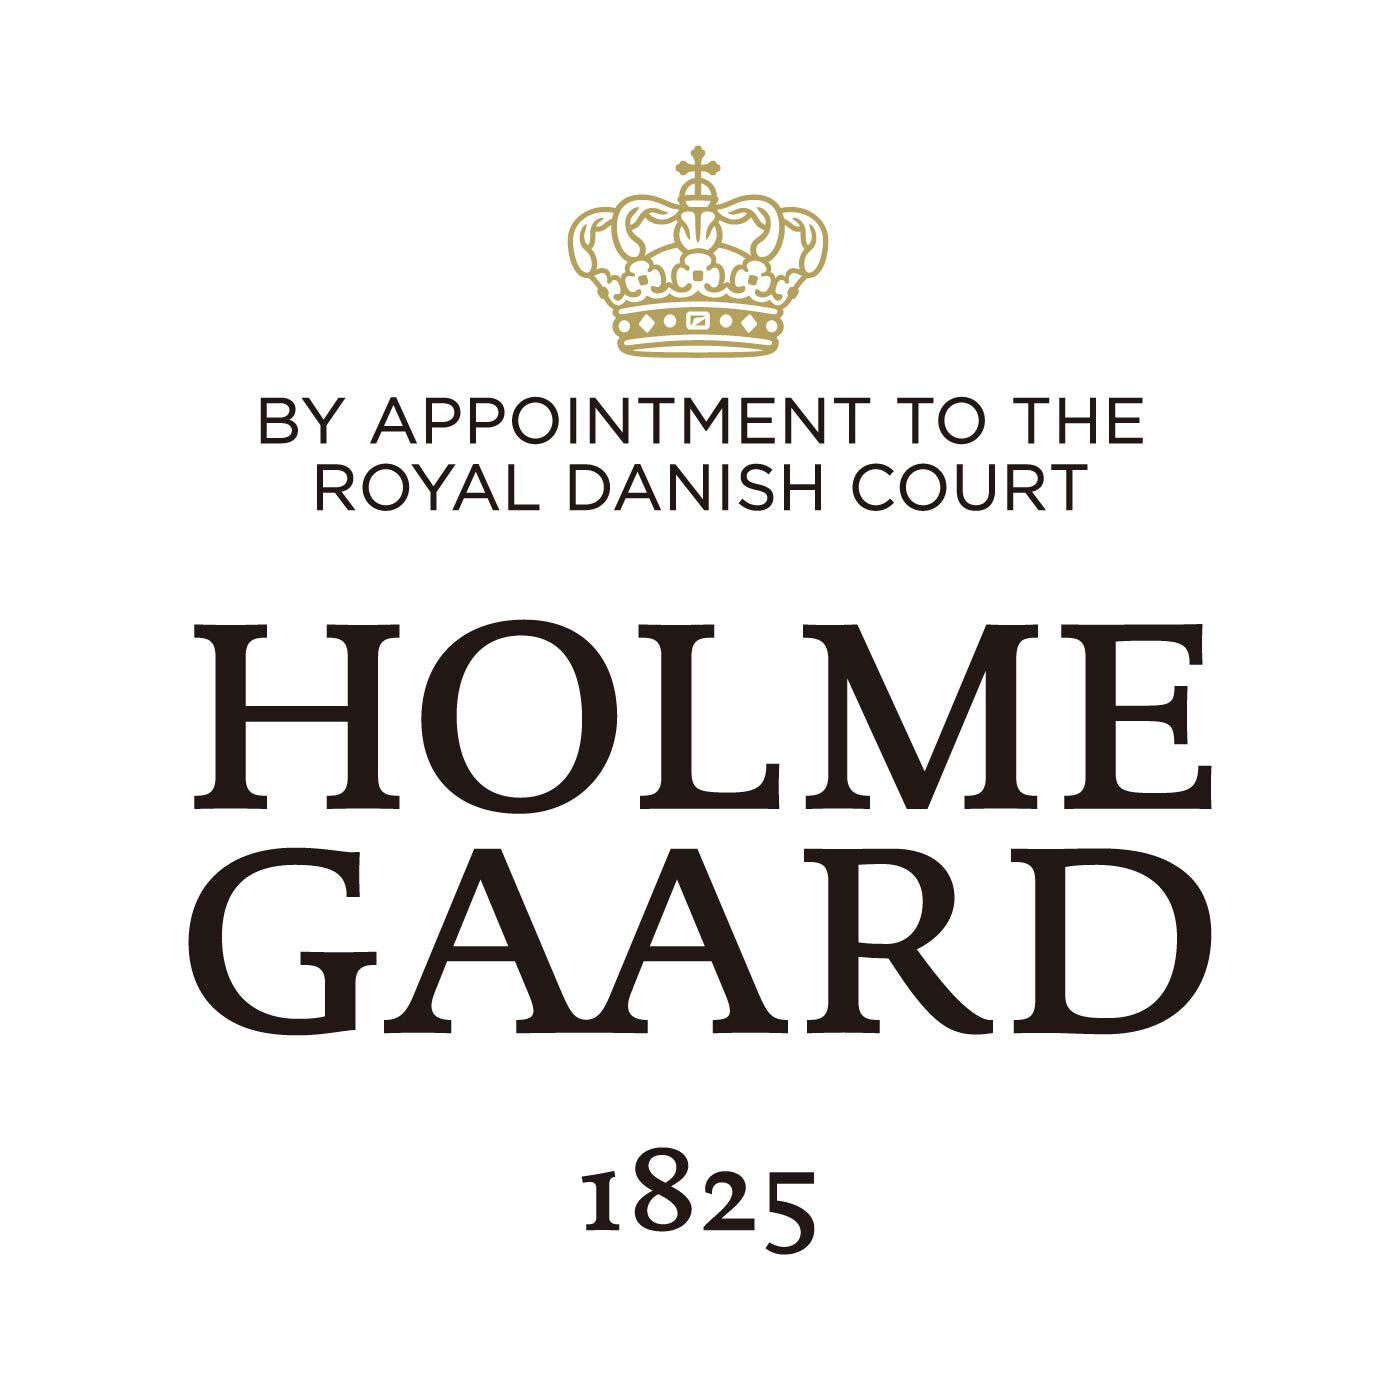 SeeMONO|ガラスのウェーブが美しい　一年中飾れるクリスマスツリー〈Ｓグリーン〉／ホルムガード|HOLMEGAARD（ホルムガード）は、1825年にデンマークに生まれた伝統あるガラスブランドです。1900年代、多くの芸術家が手掛け始めるホルムガードの商品は、そのクオリティの高さからデンマーク王室 御用達ブランドに選ばれました。熟練の職人たちによる吹きガラス製法で生み出されるユニークなデ ザインのガラス製品は世界中の美術館に所蔵されています。